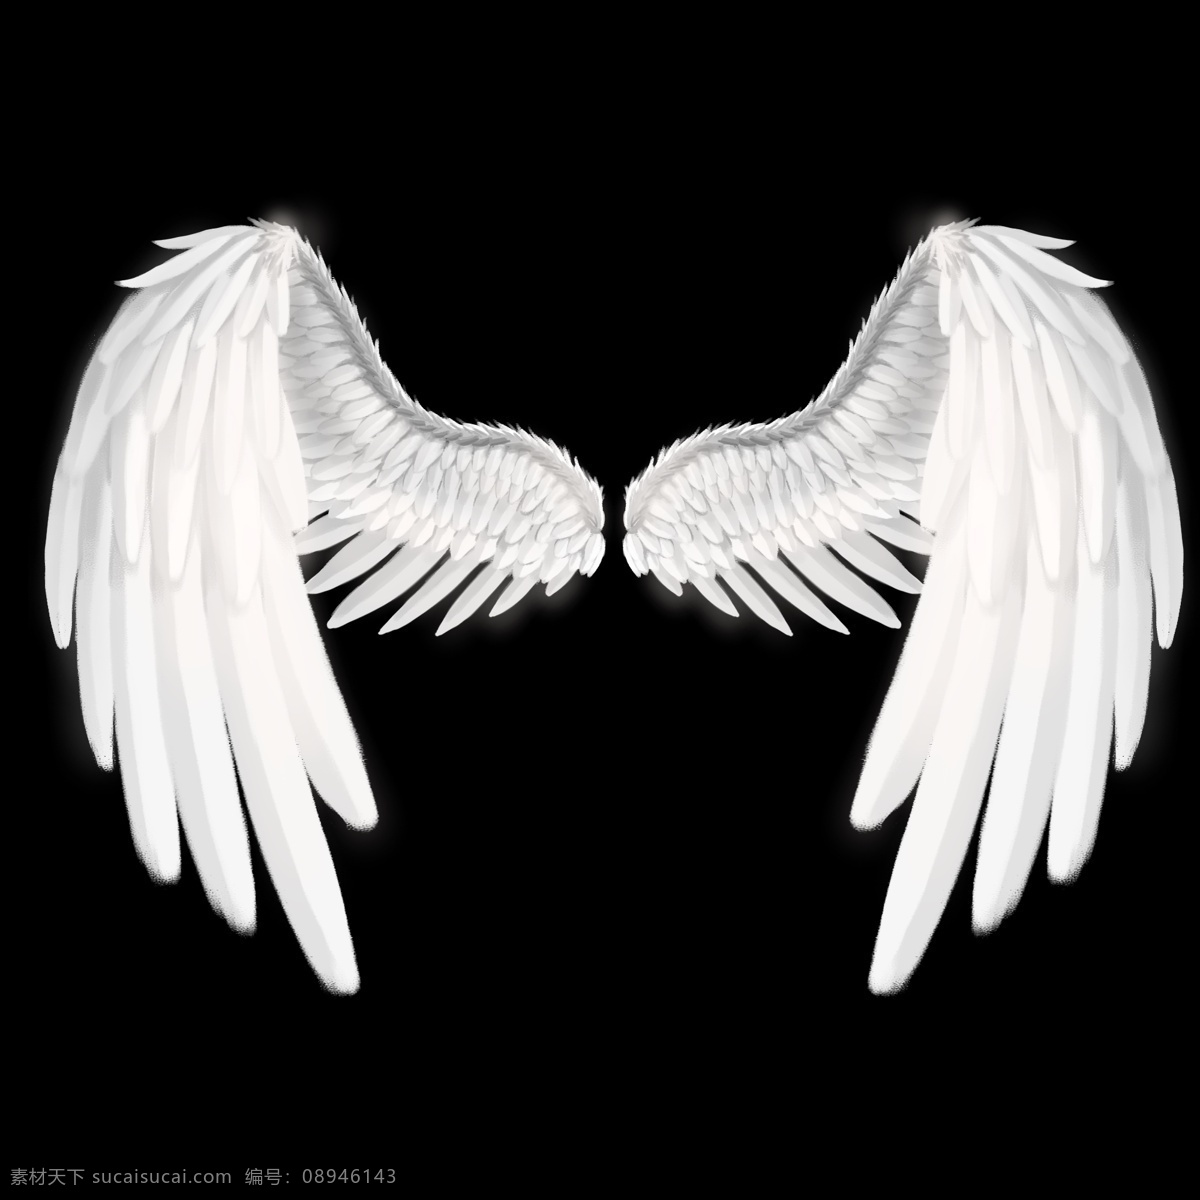 天使 唯美 白色 翅膀 天使翅膀 白色翅膀